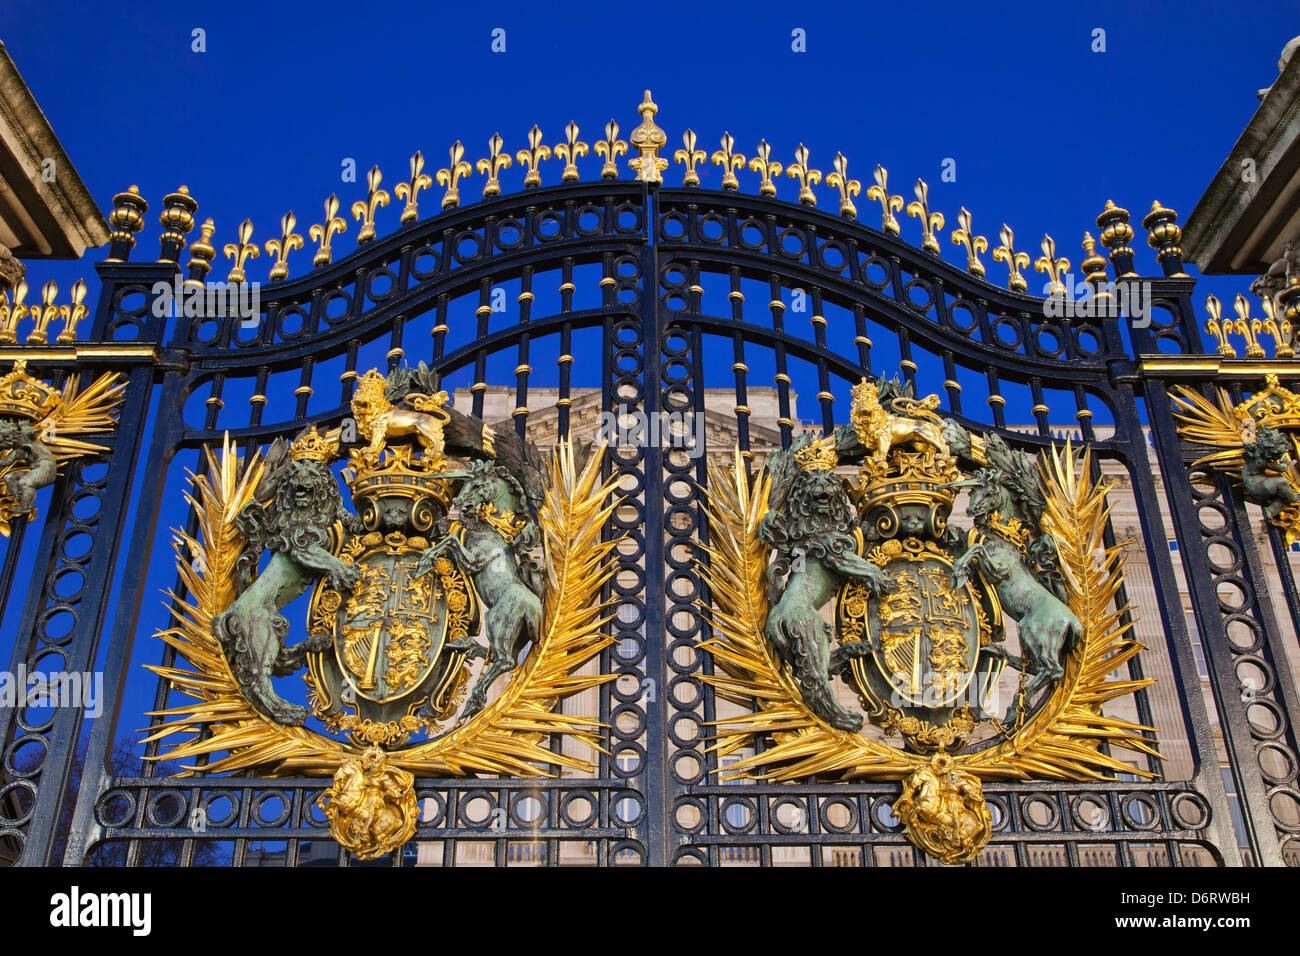 UK, London, Buckingham Palace, Royal Coat of Arms on Main Gate Stock Photo